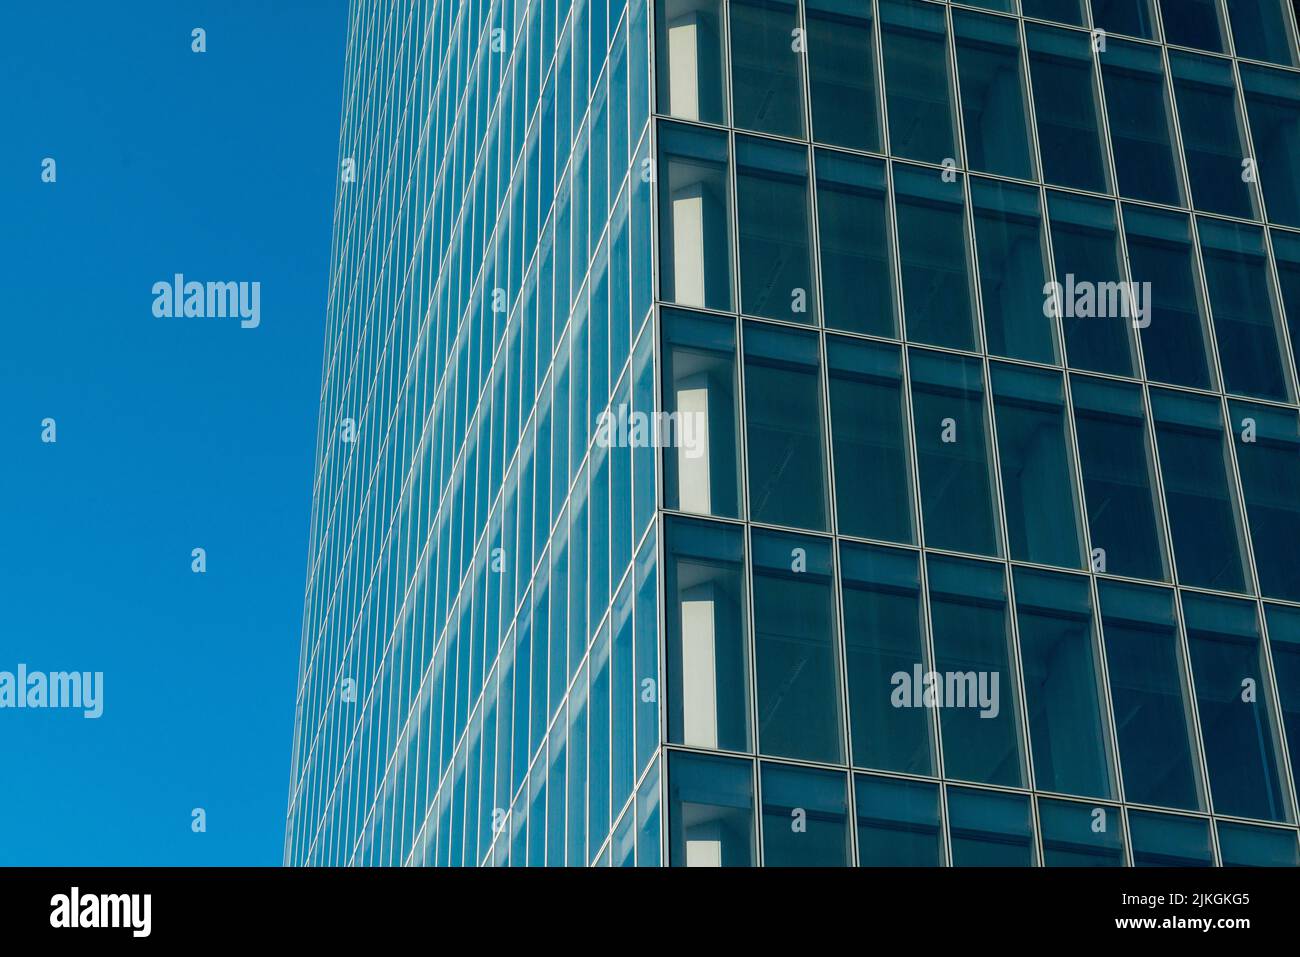 Besondere Wolkenkratzer: Ecke eines Gebäudes mit öffentlichen Büroböden, mit Elementen aus Fenstern und durchgehender Verglasung auf der gesamten Fassade, typisch o Stockfoto